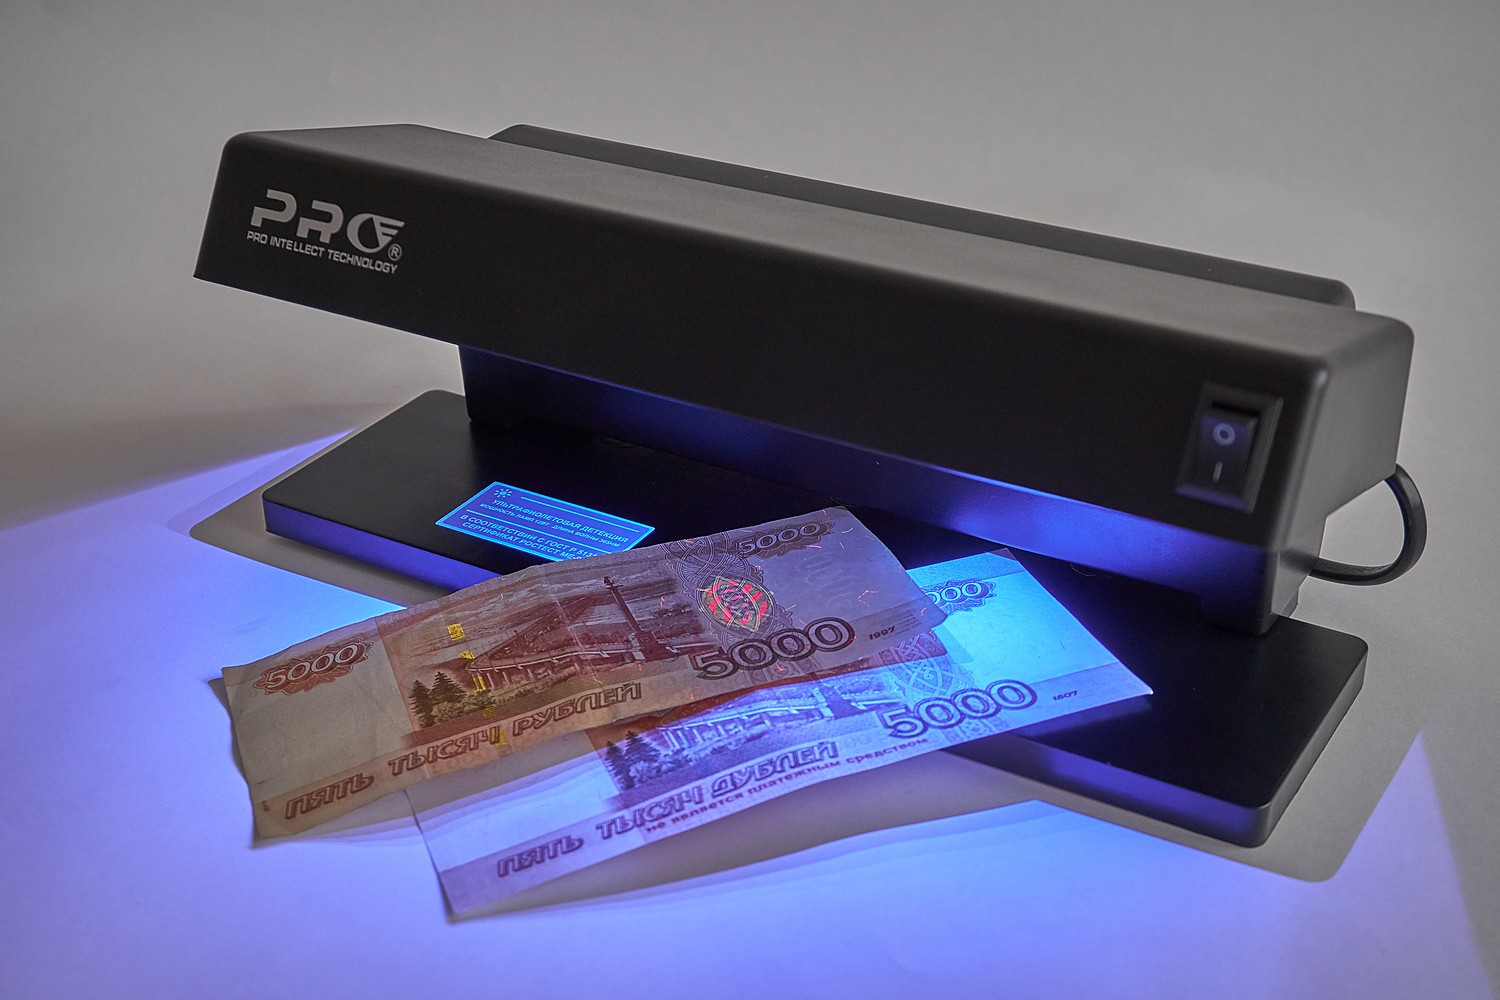 Детектор зачем. Детектор банкнот Pro 12lpm. Детектор банкнот Pro 12 led т-06349. Pro детектор банкнот Pro 4 led. "Детектор валют ir-1750".